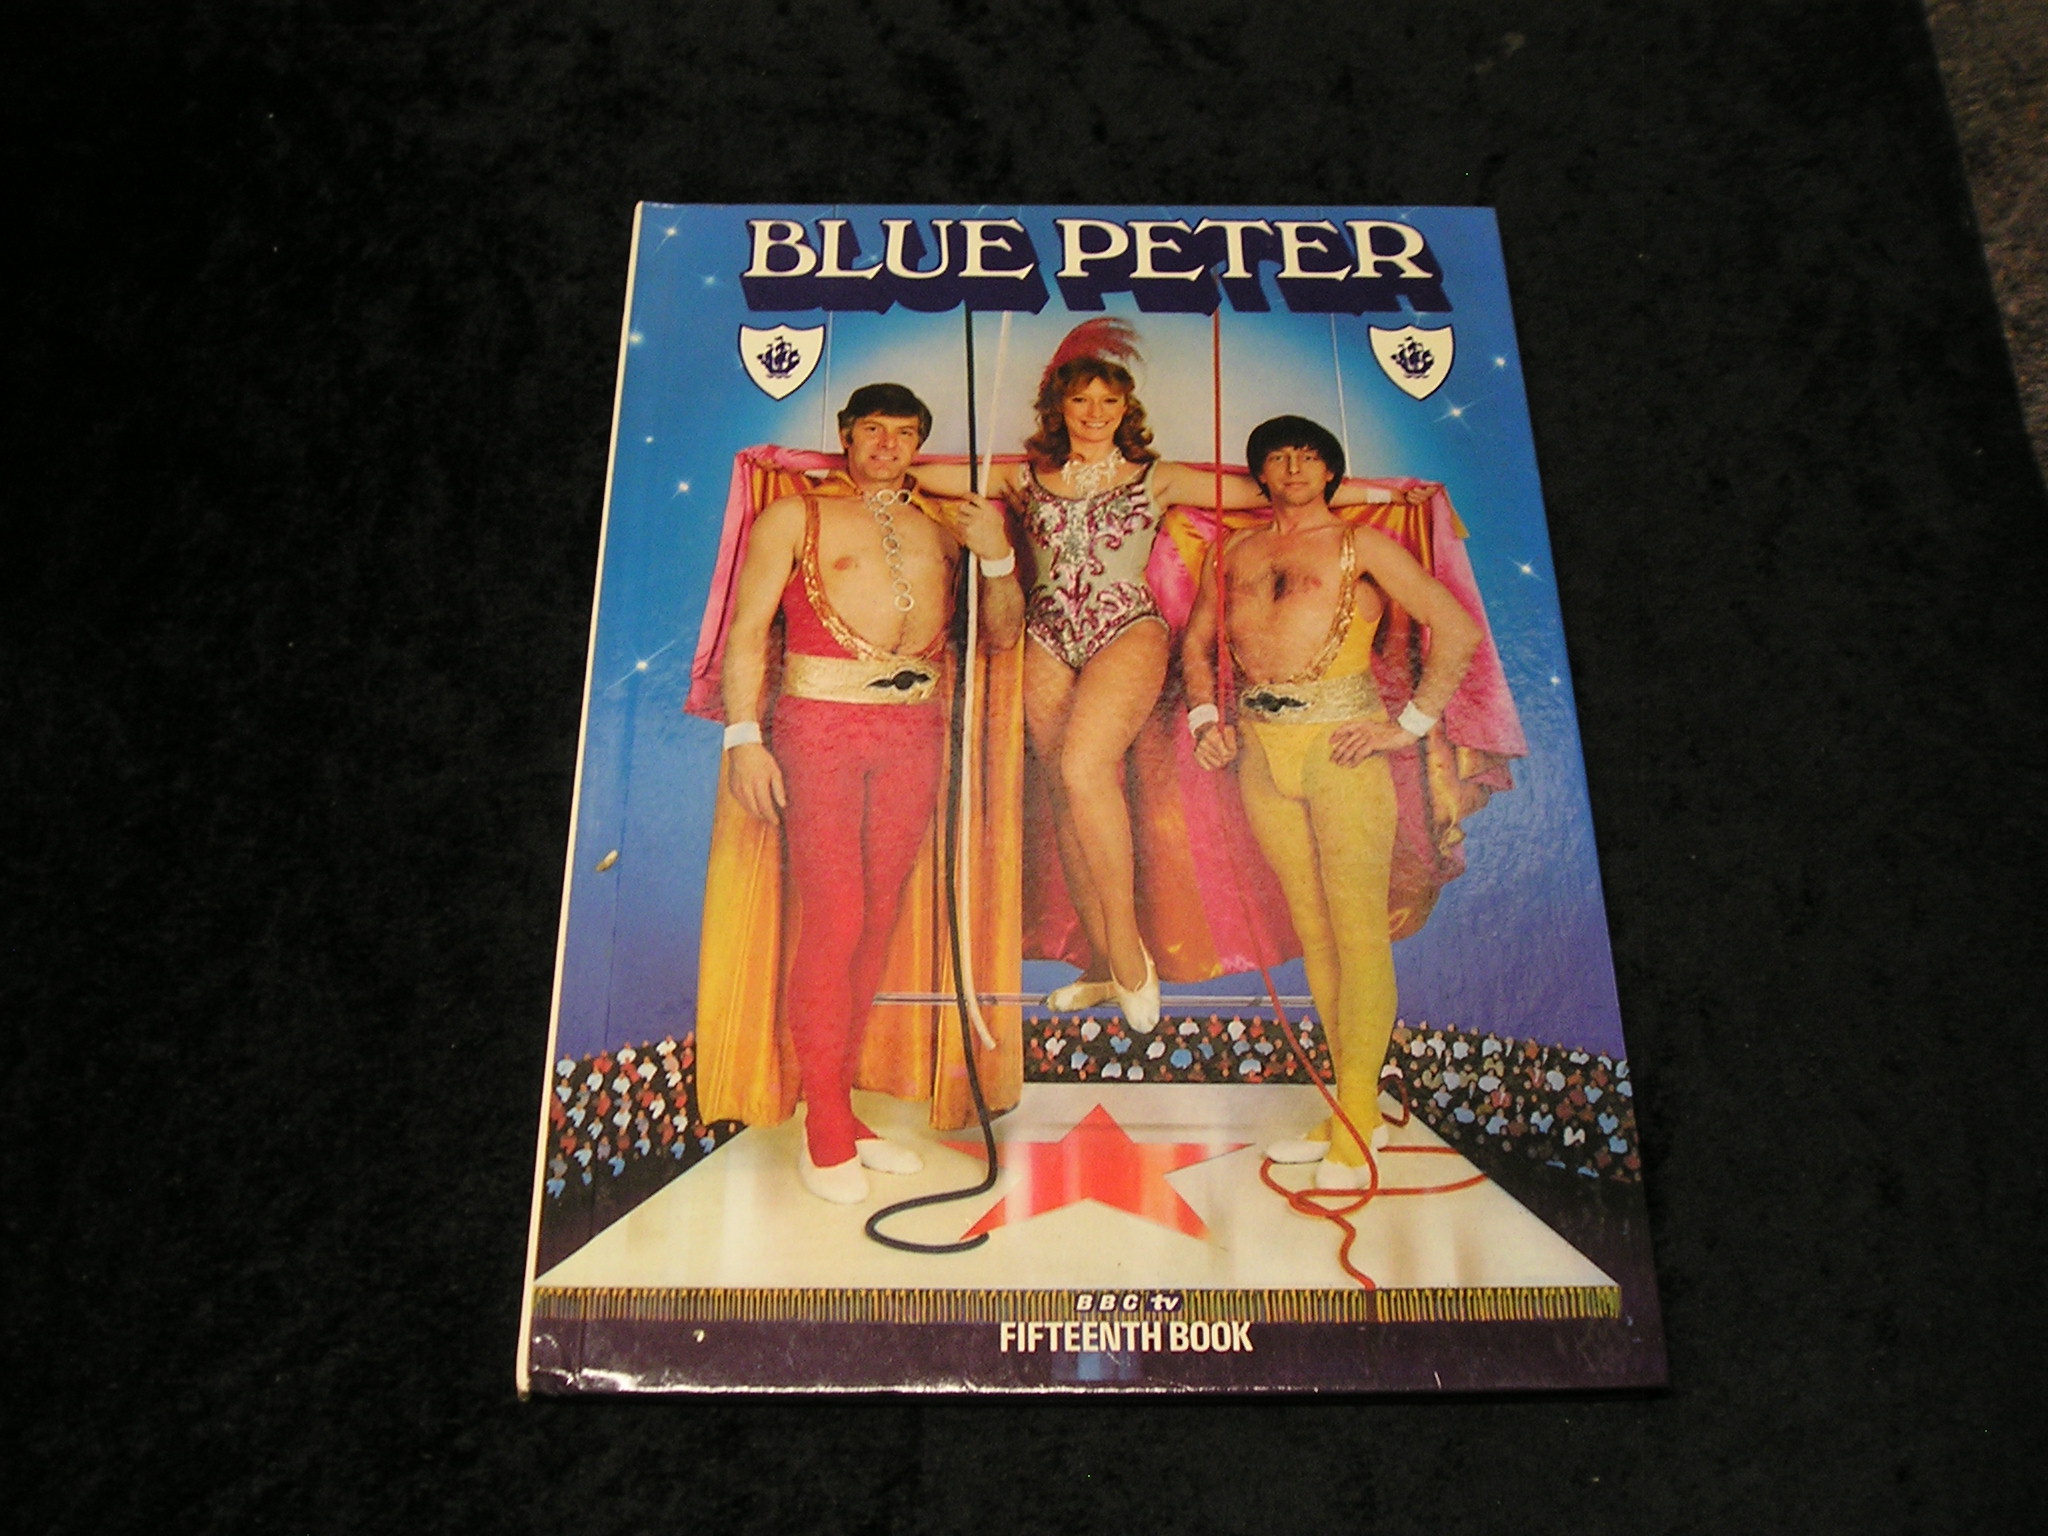 Blue Peter Fifteenth Book